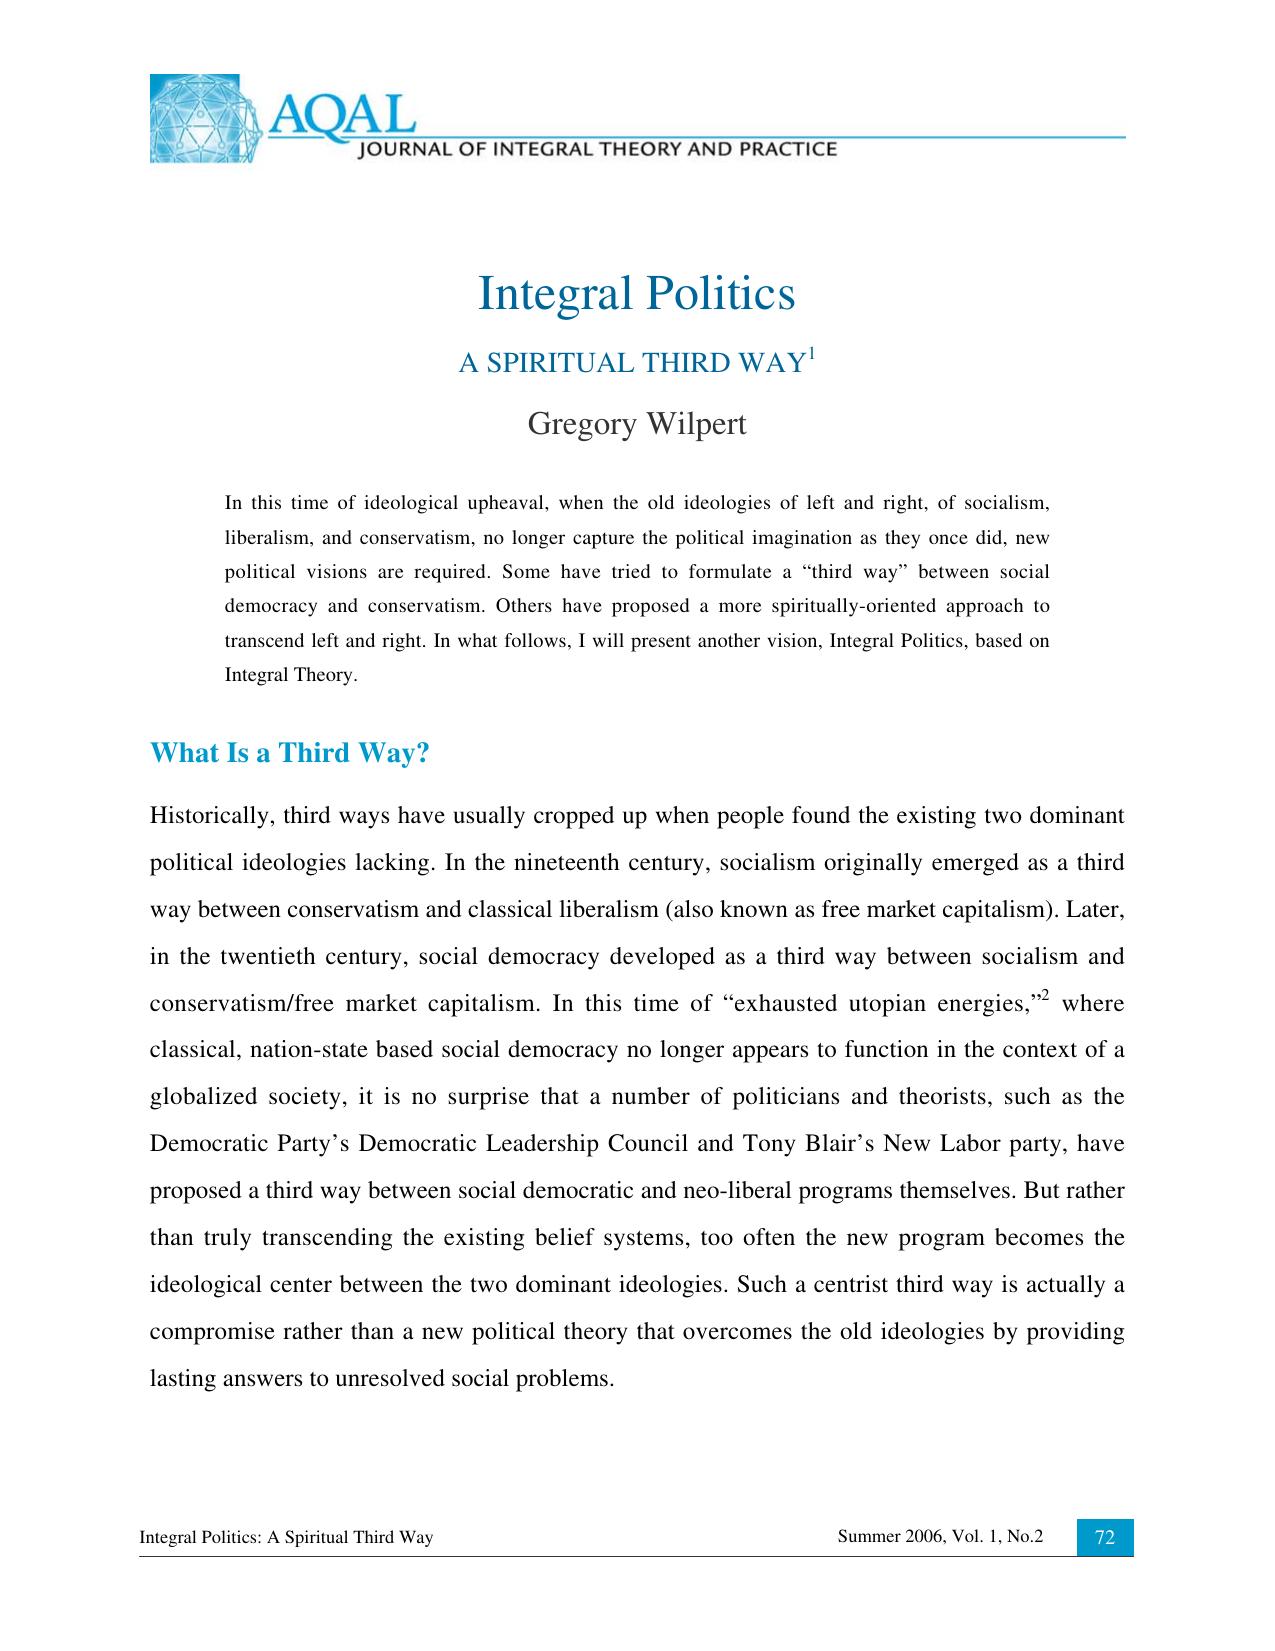 Integral Politics - A Spiritual Third Way - AQAL Vol1 No2